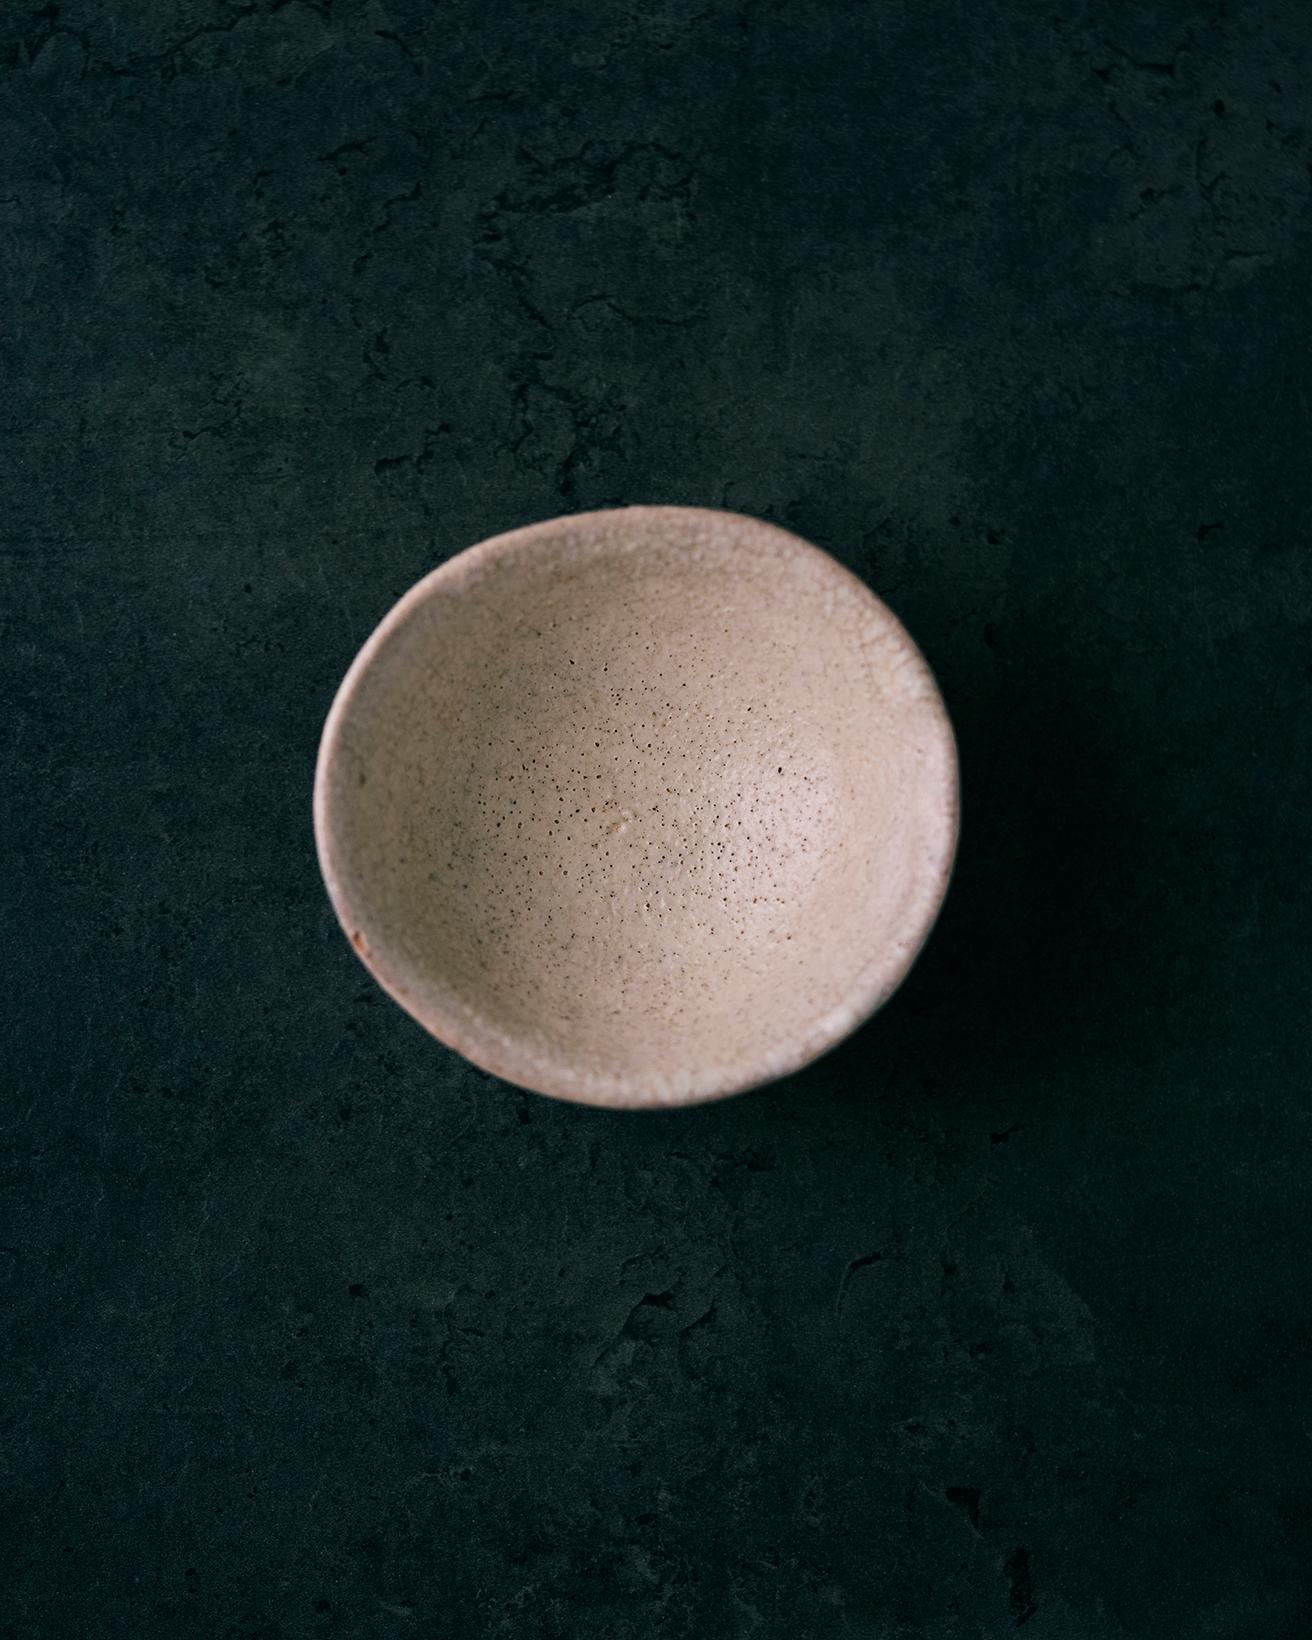 李朝の高麗陶磁を継承する陶芸家で知られる、小林東五さんのうつわです。本当はお猪口なんですが、サイズ感がちょうどいいので豆皿代わりに使っています。ちょっとしたお塩やオイルなどを入れるのにもいいサイズ。